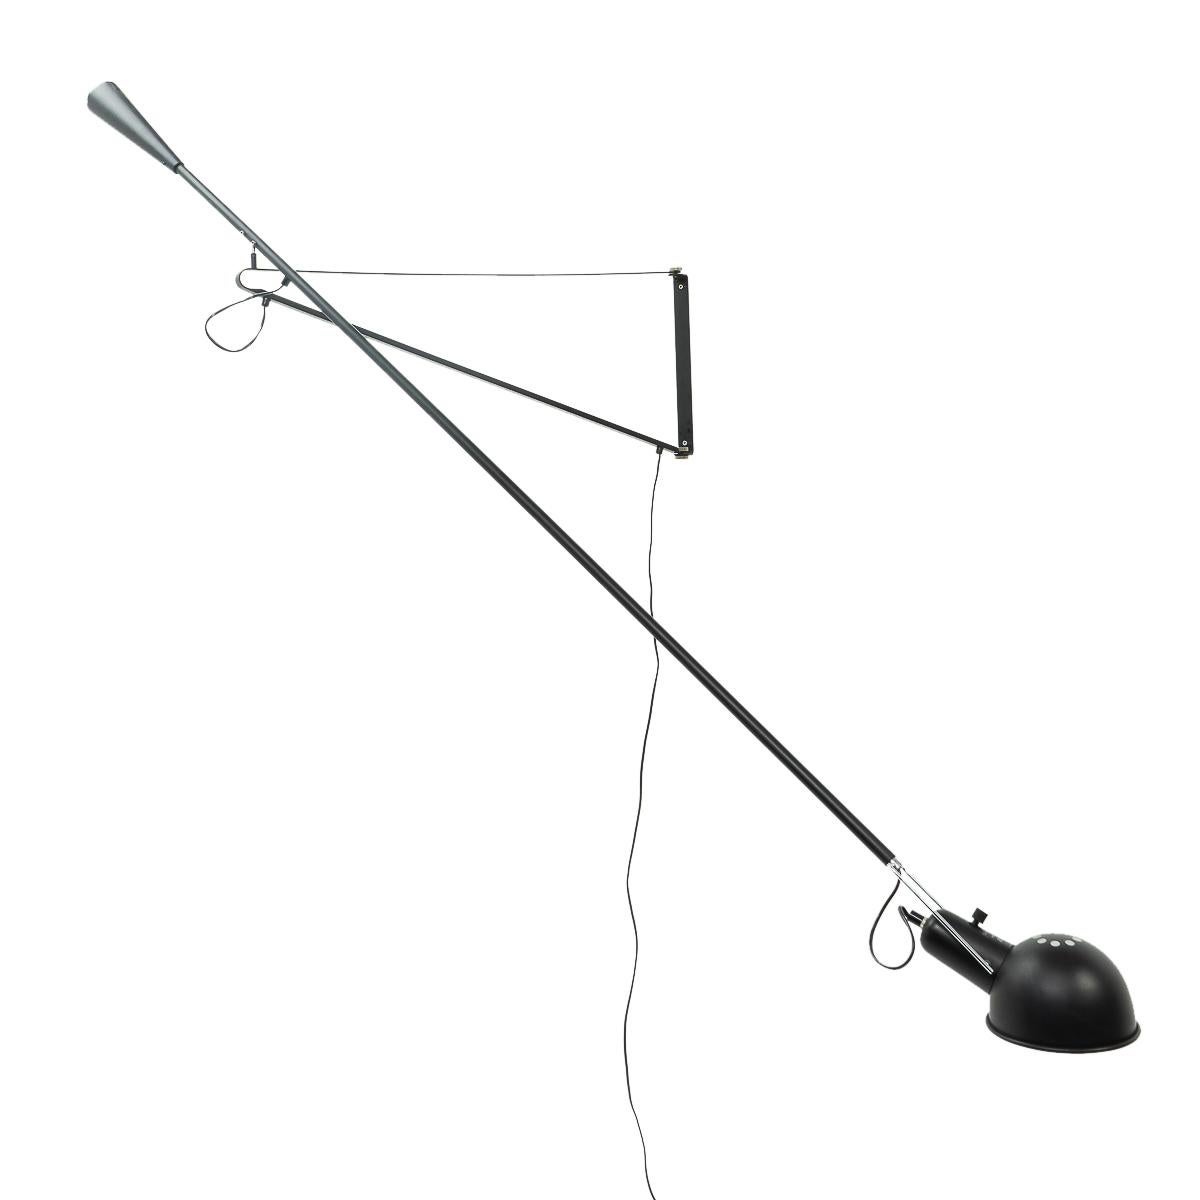 Applique de contrepoids modèle 265 en métal noir de Paolo Rizzatto, datant d'avant Flos ; la lampe peut tourner dans plusieurs directions et fournit une lumière directe. 

Ampoule à vis E27, adaptée au réseau électrique américain.



 
 
Dimensions